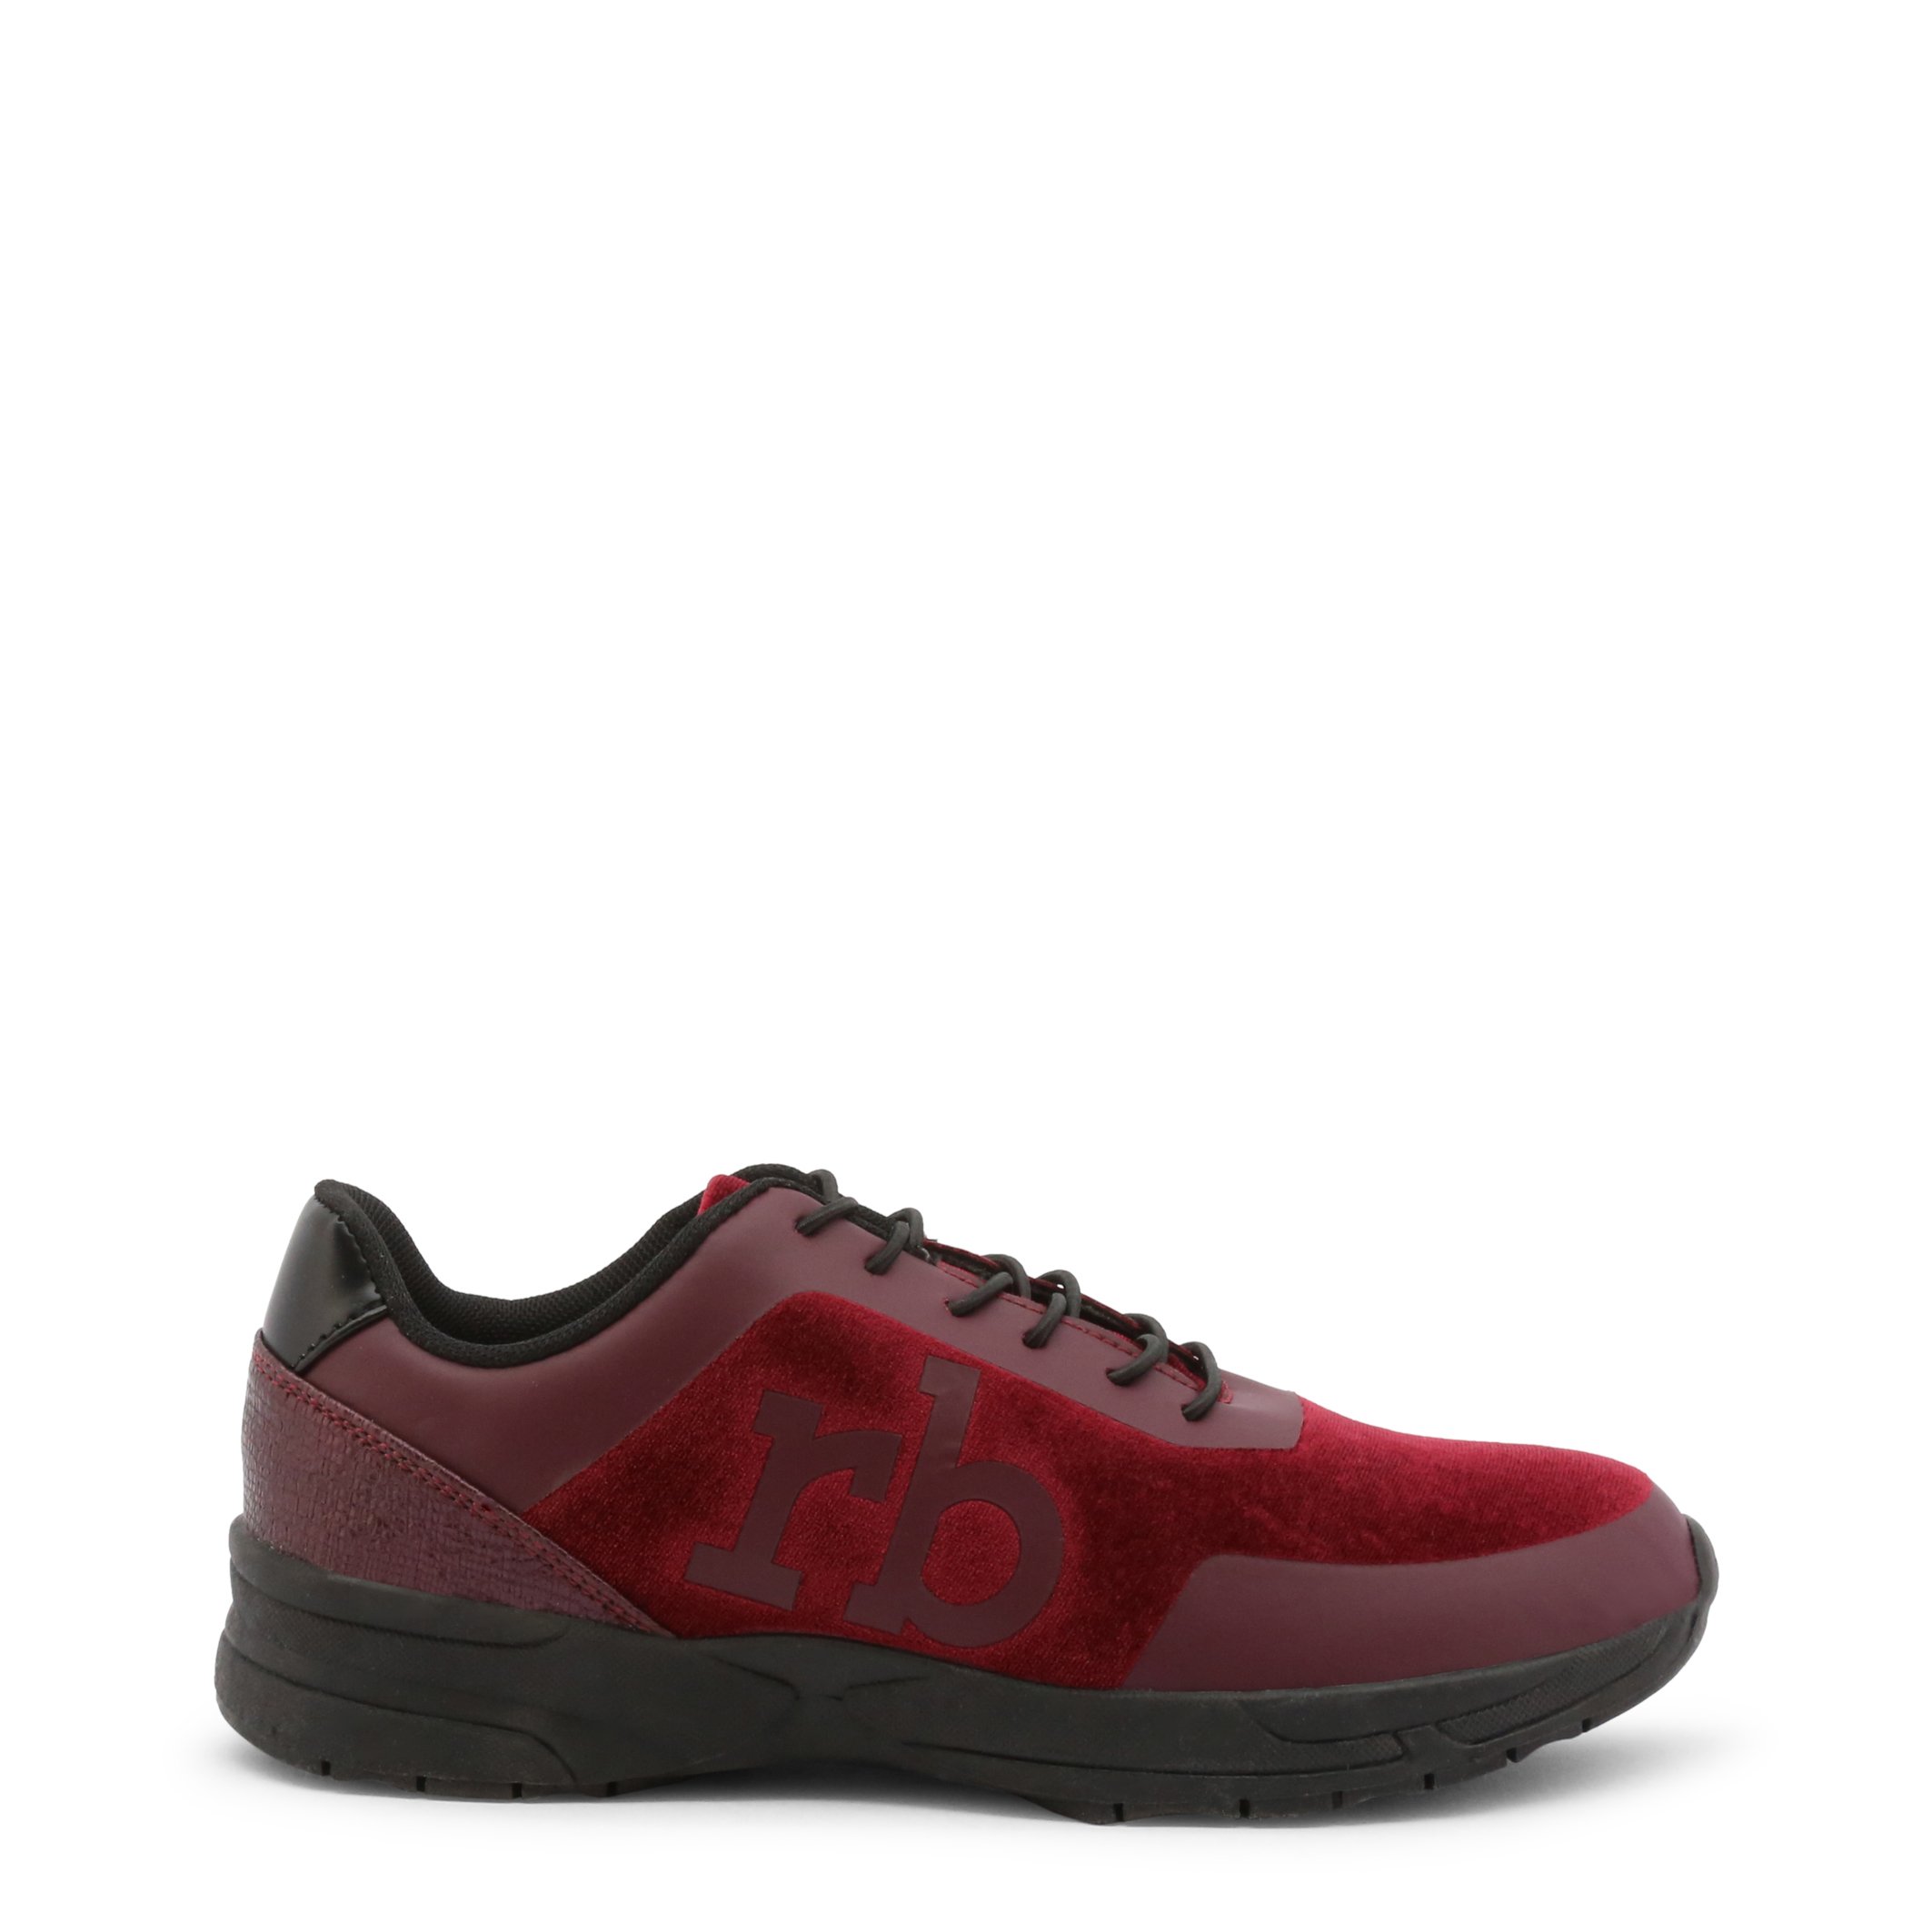 Roccobarocco Women's Sneakers Shoe Black 342955 - red EU 37